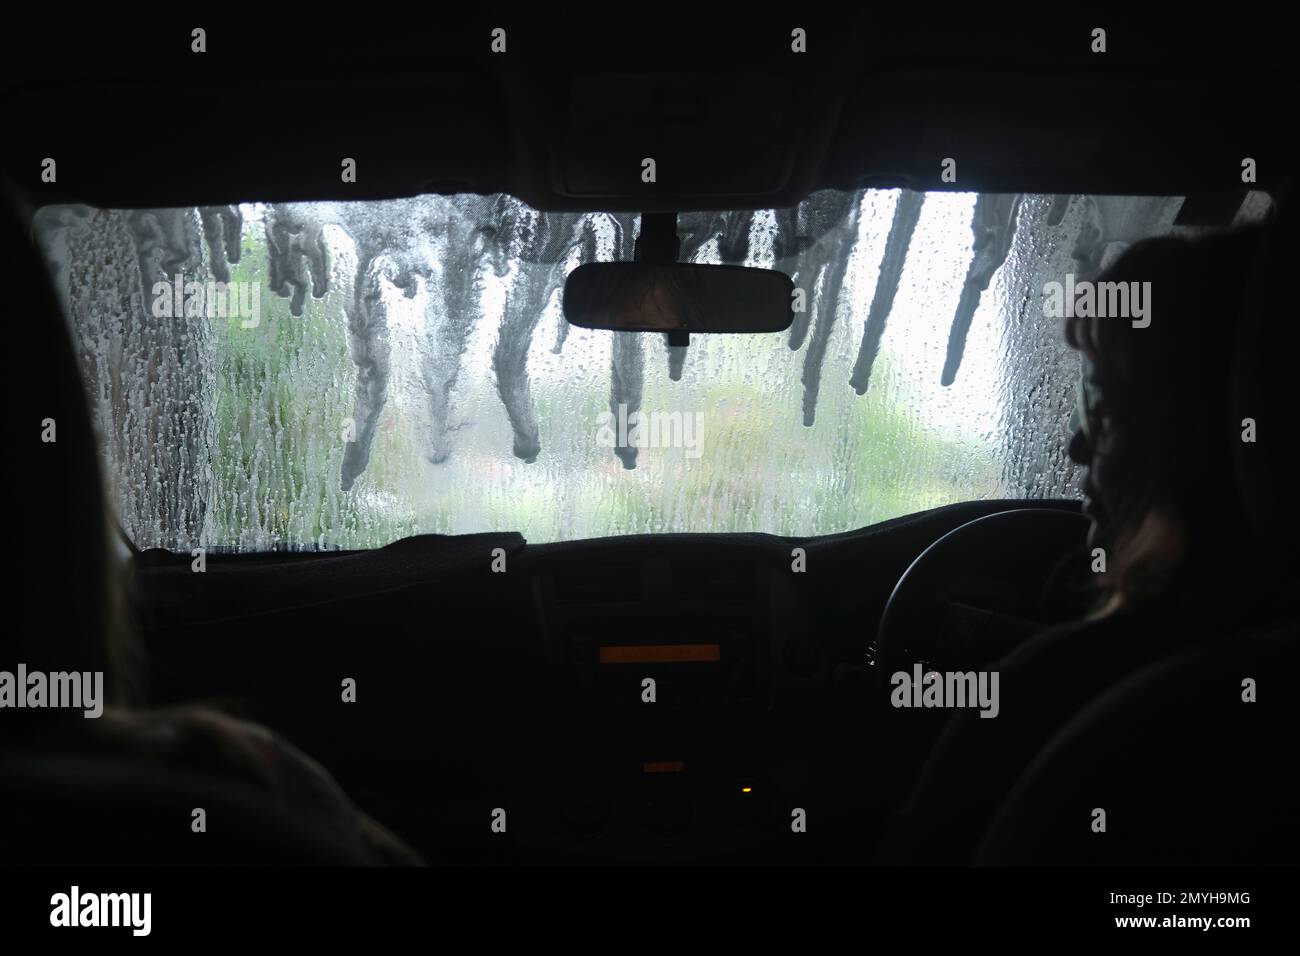 Vista dall'interno di un'auto mentre passa attraverso un autolavaggio automatico, parabrezza bagnato. Foto Stock